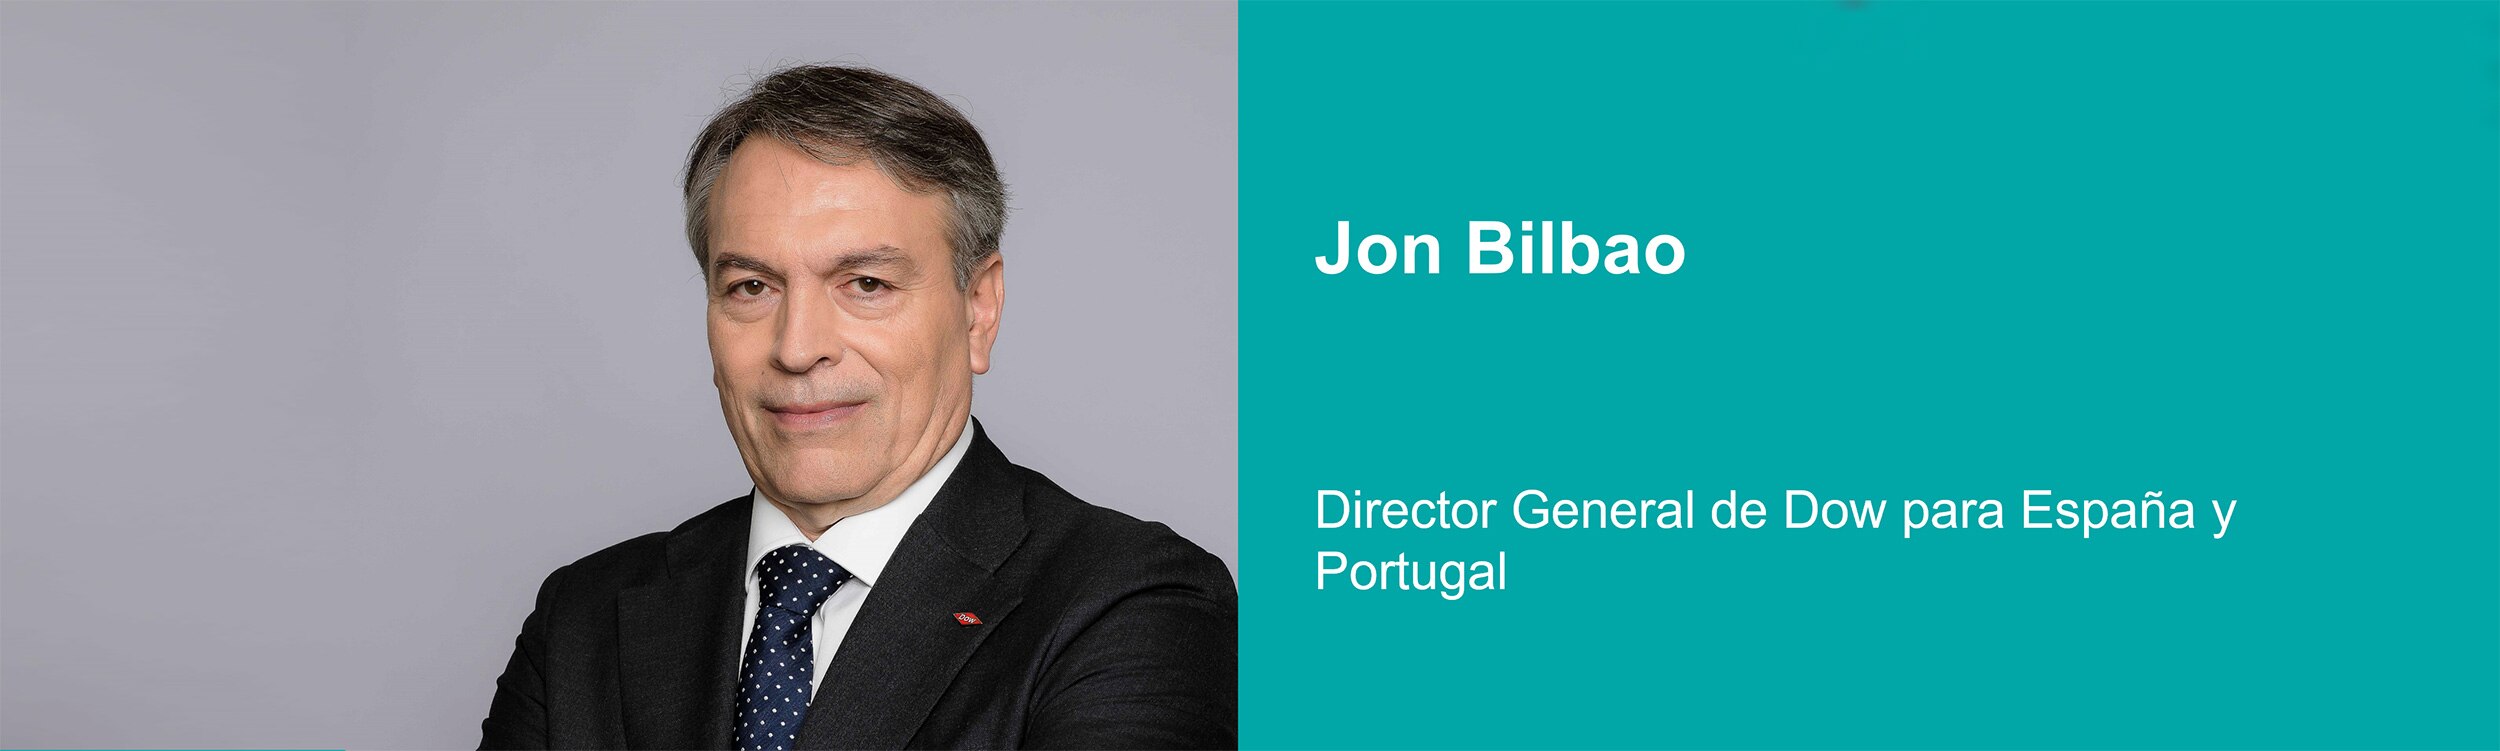 Jon Bilbao